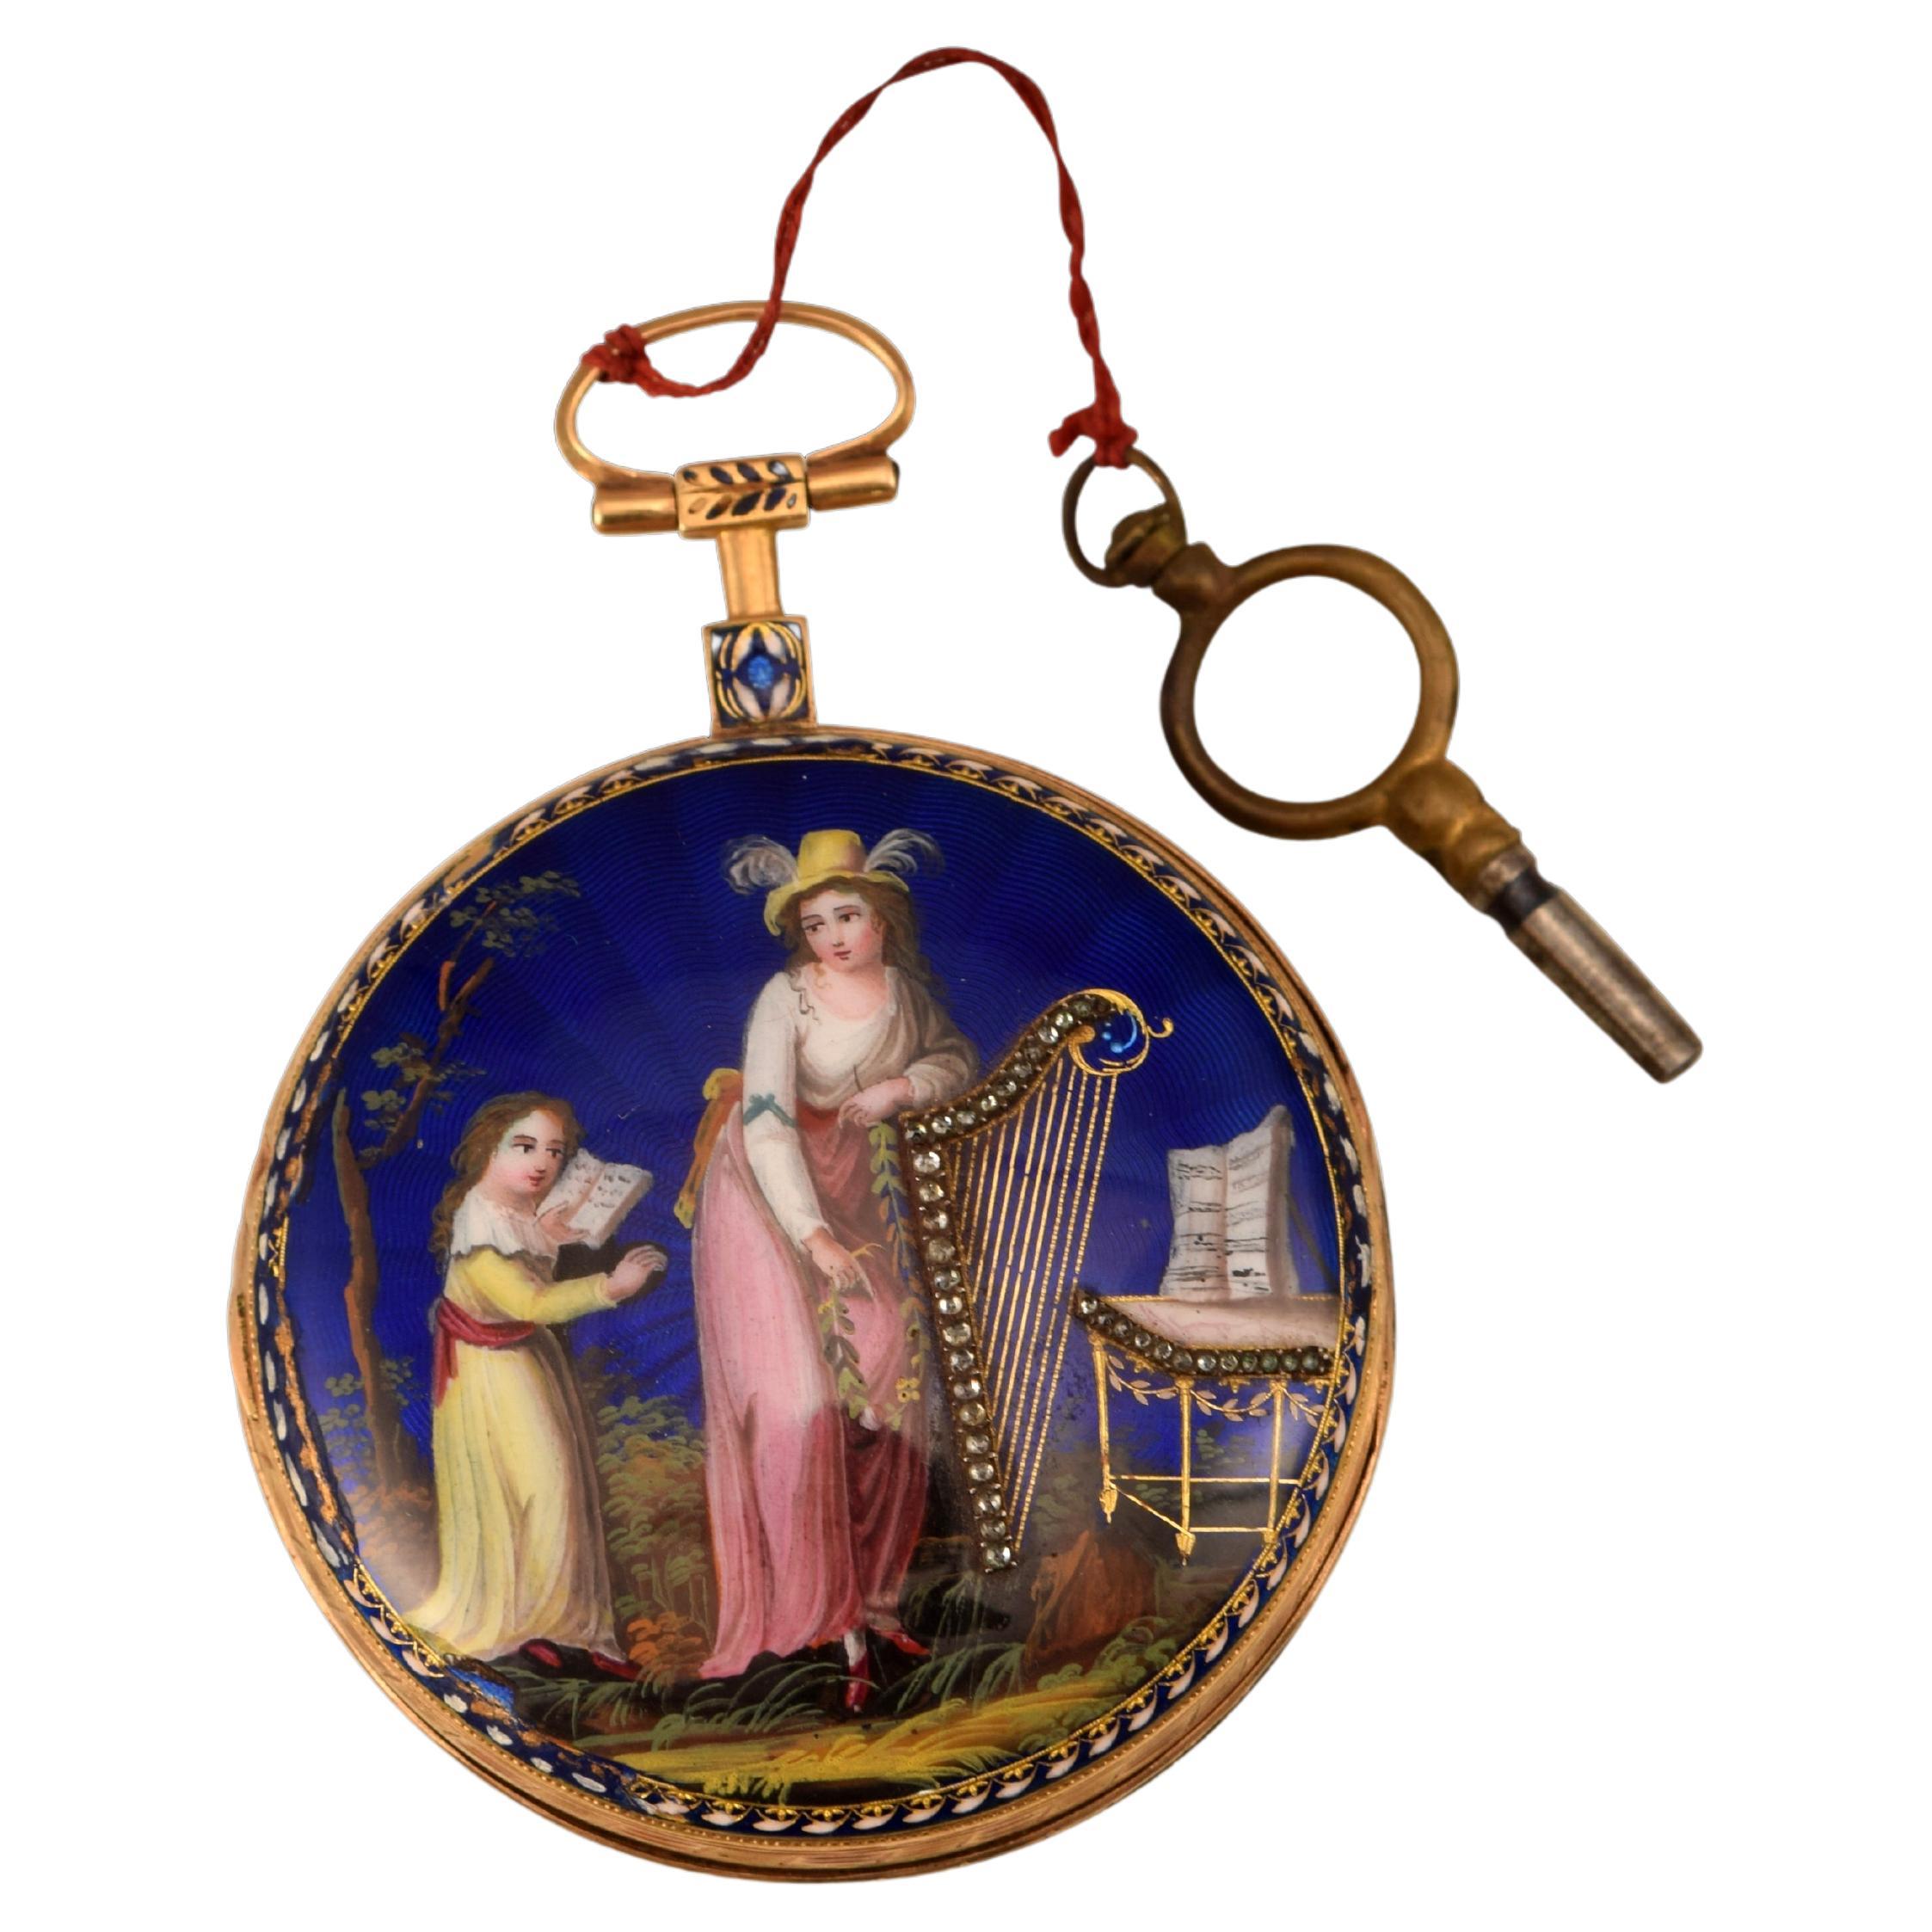 Taschenuhr, Gebrüder Deroches, vergoldetes Metall, Emaille, Etc. Ende des 18. Jahrhunderts